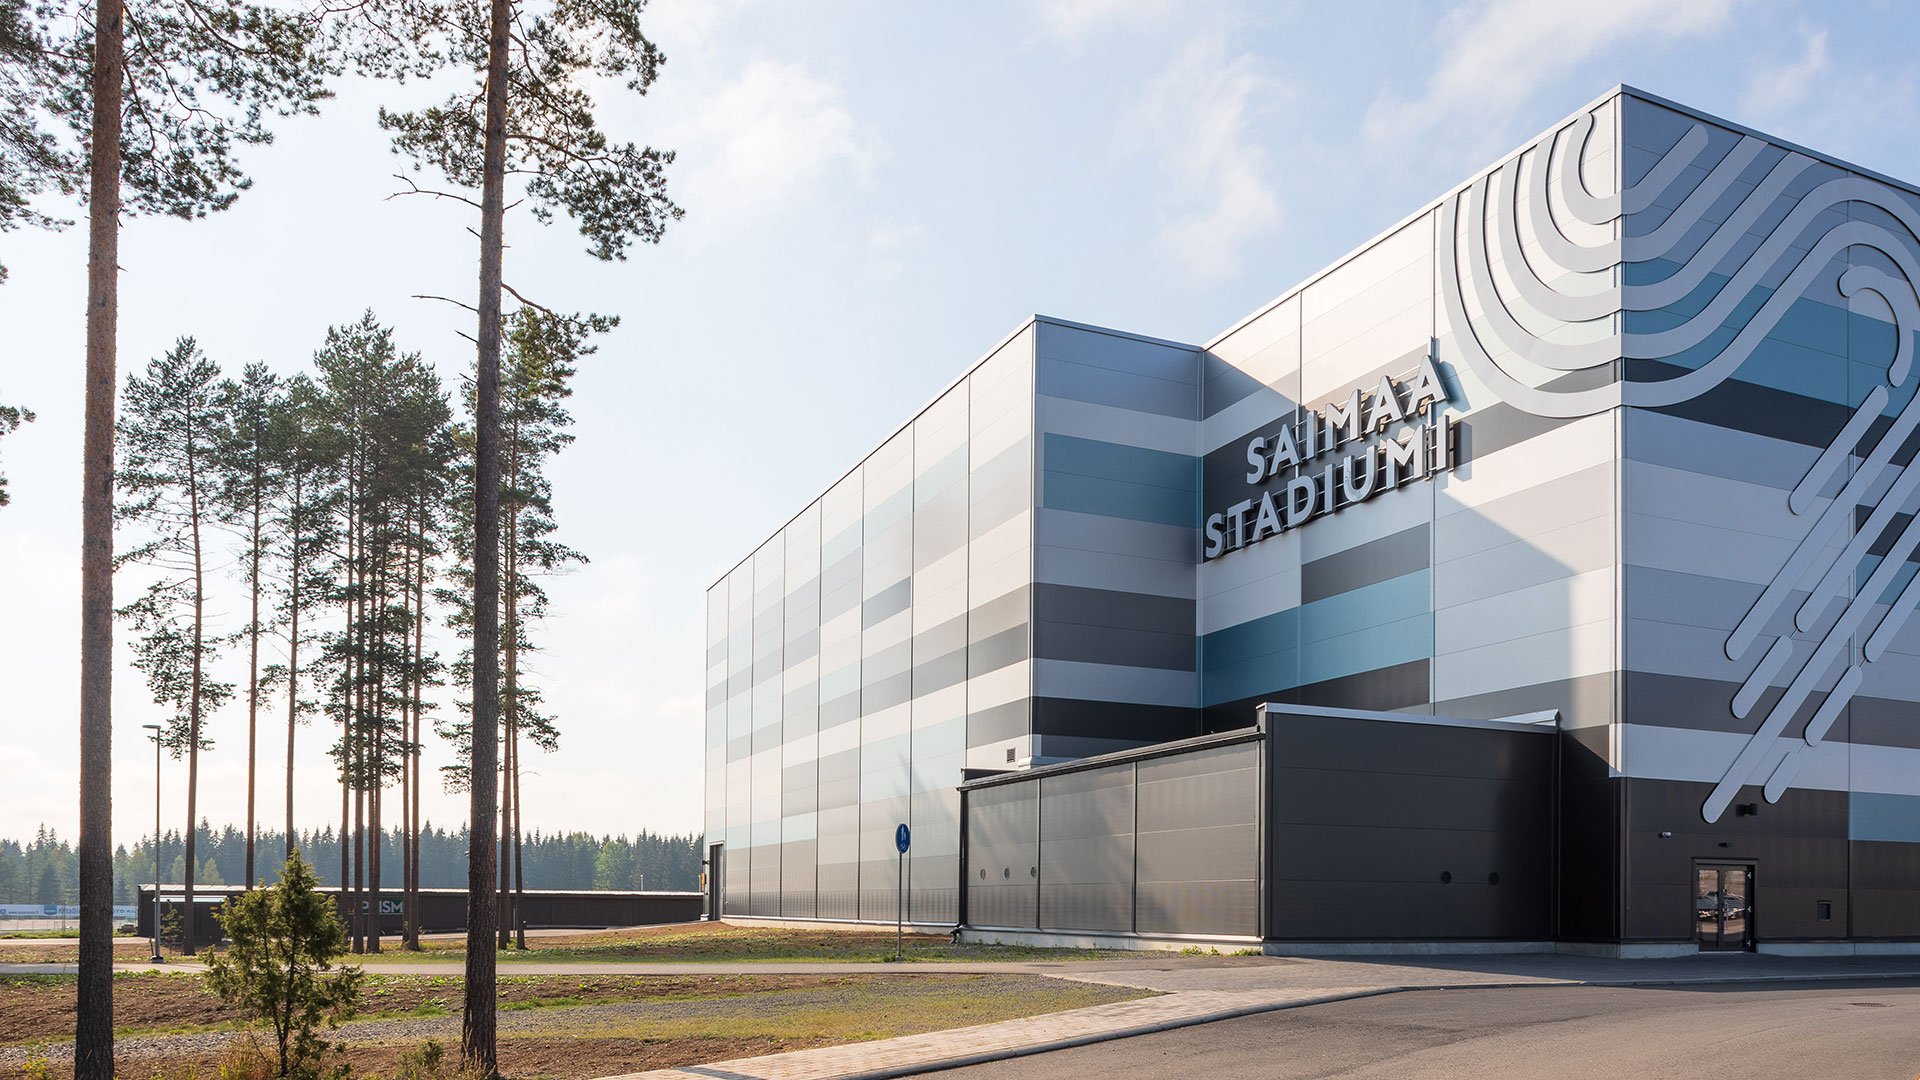 Saimaa Stadiumi, Mikkeli